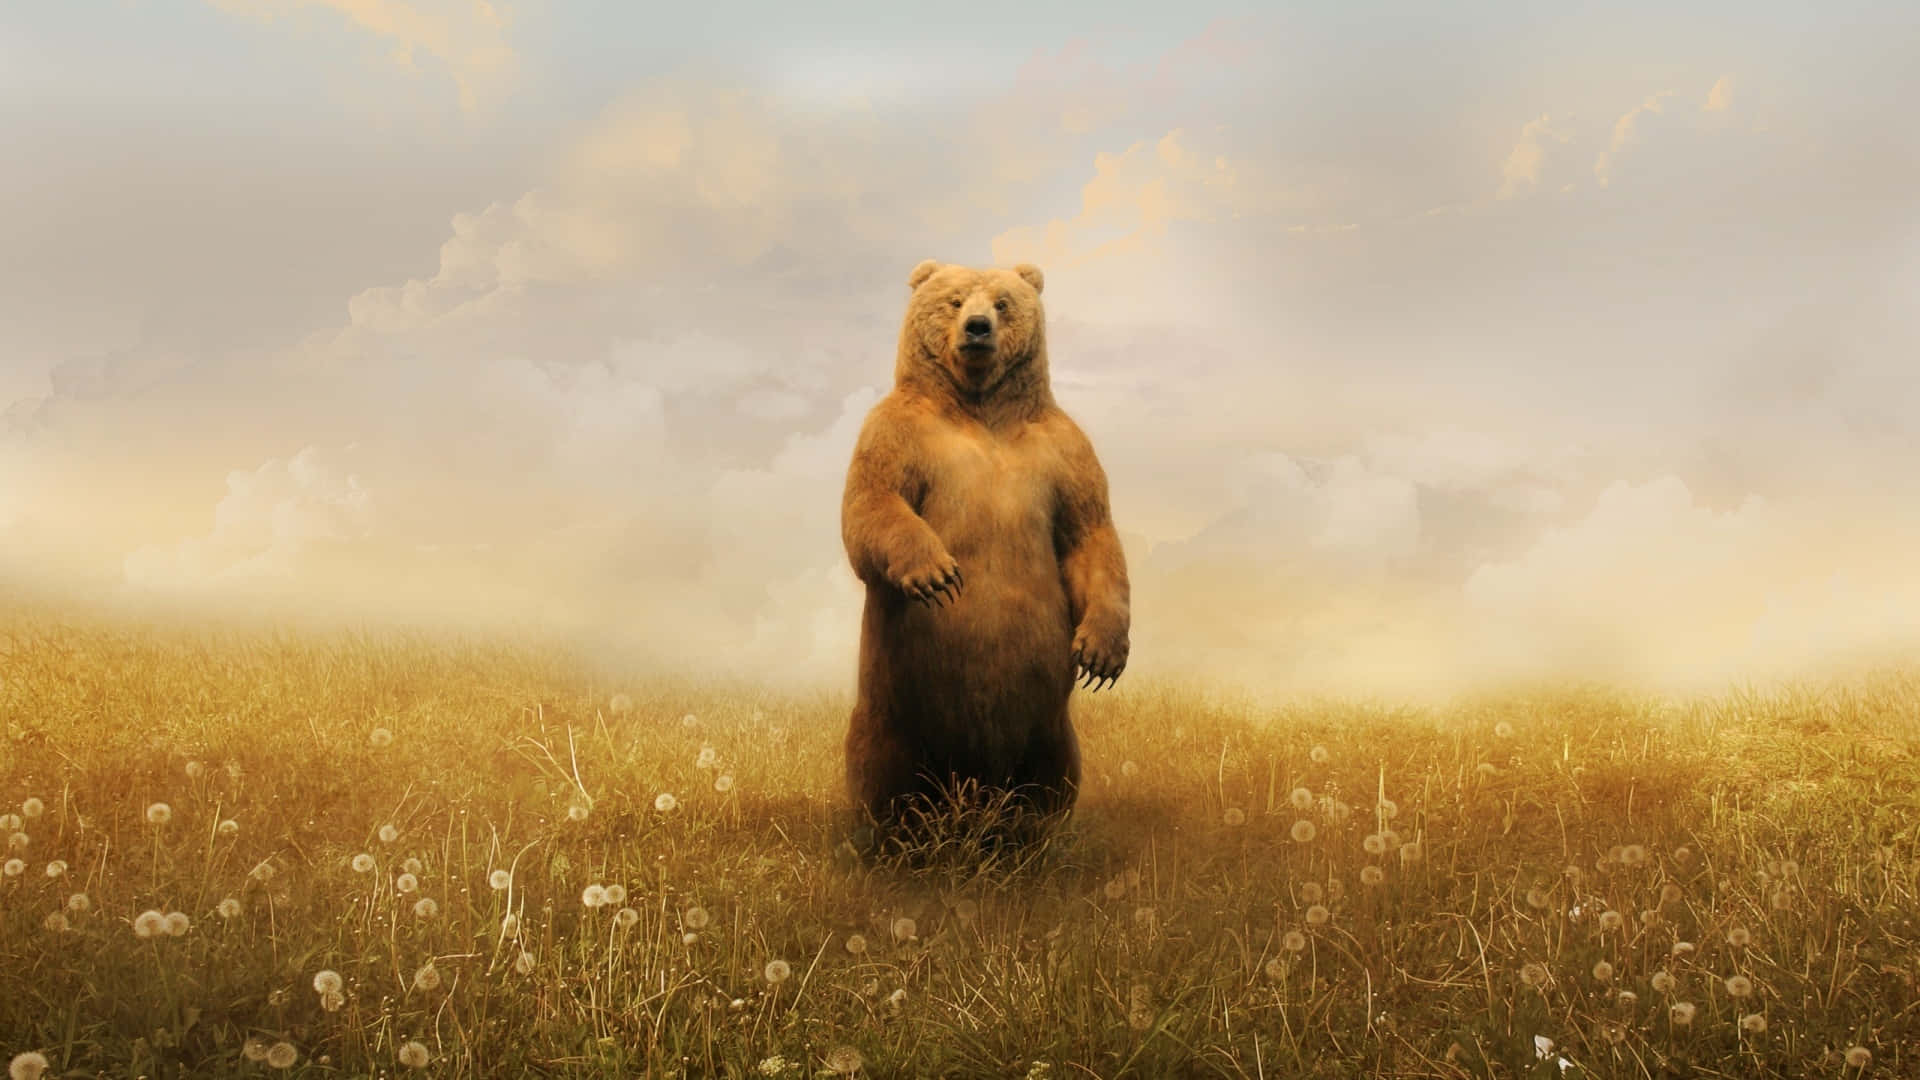 "A Brown Bear Enjoying a Beautiful Summer Day"